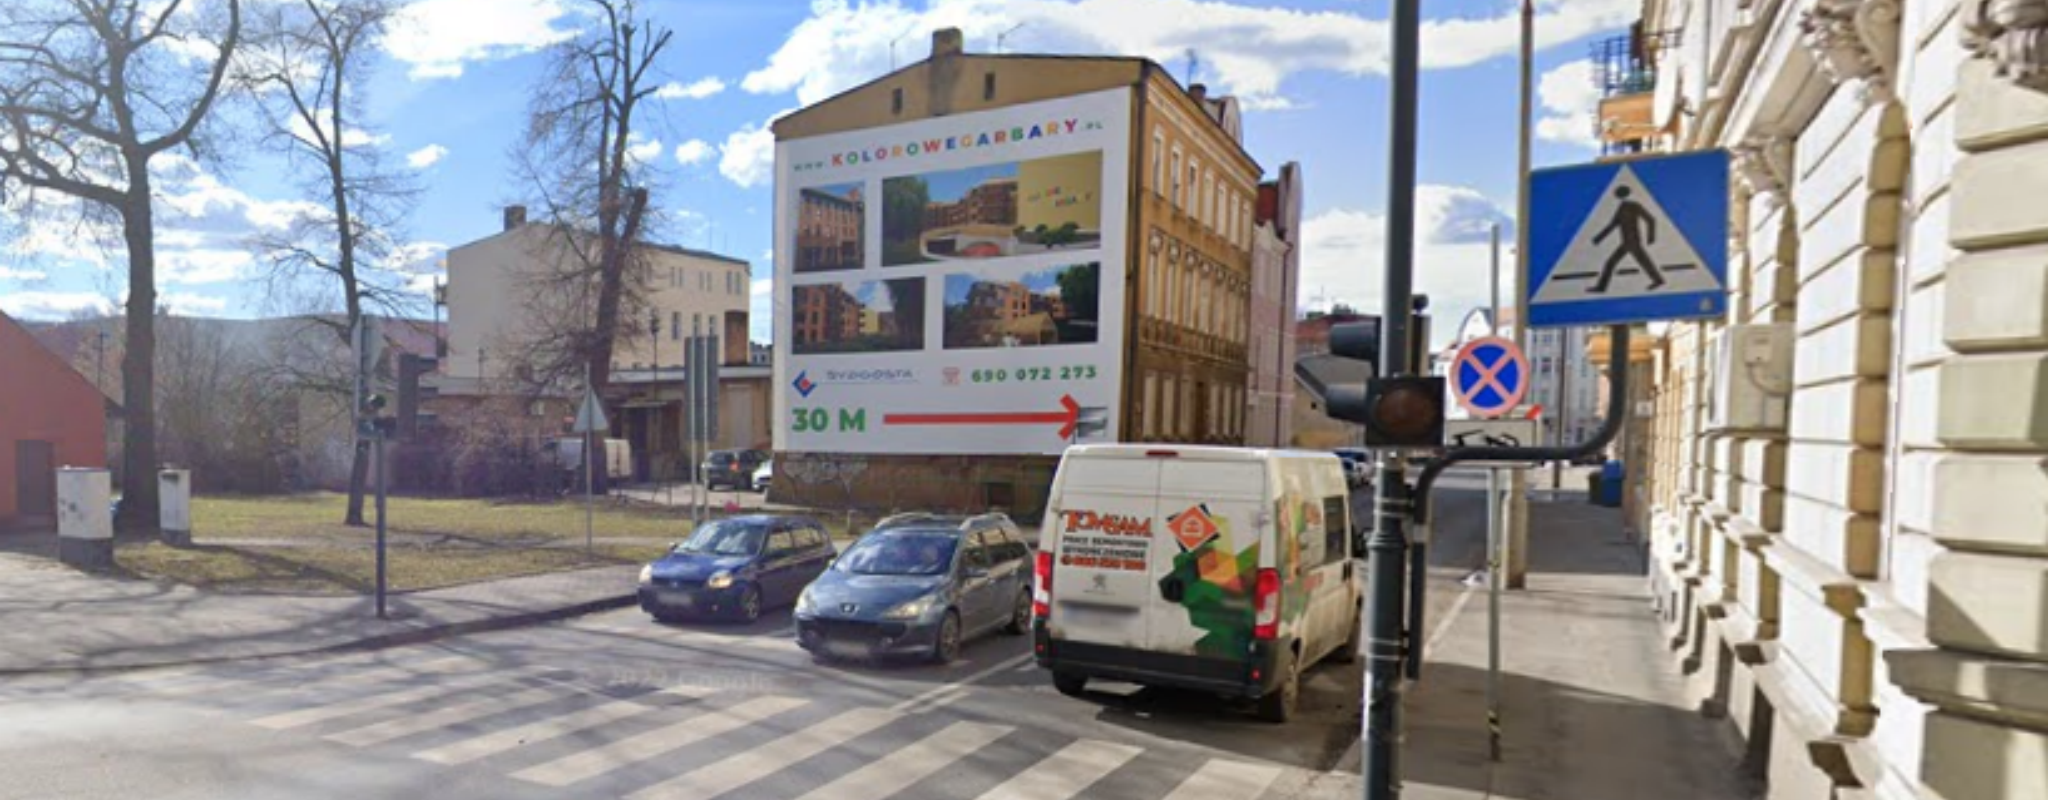 Reklama Garbary Bydgoszcz